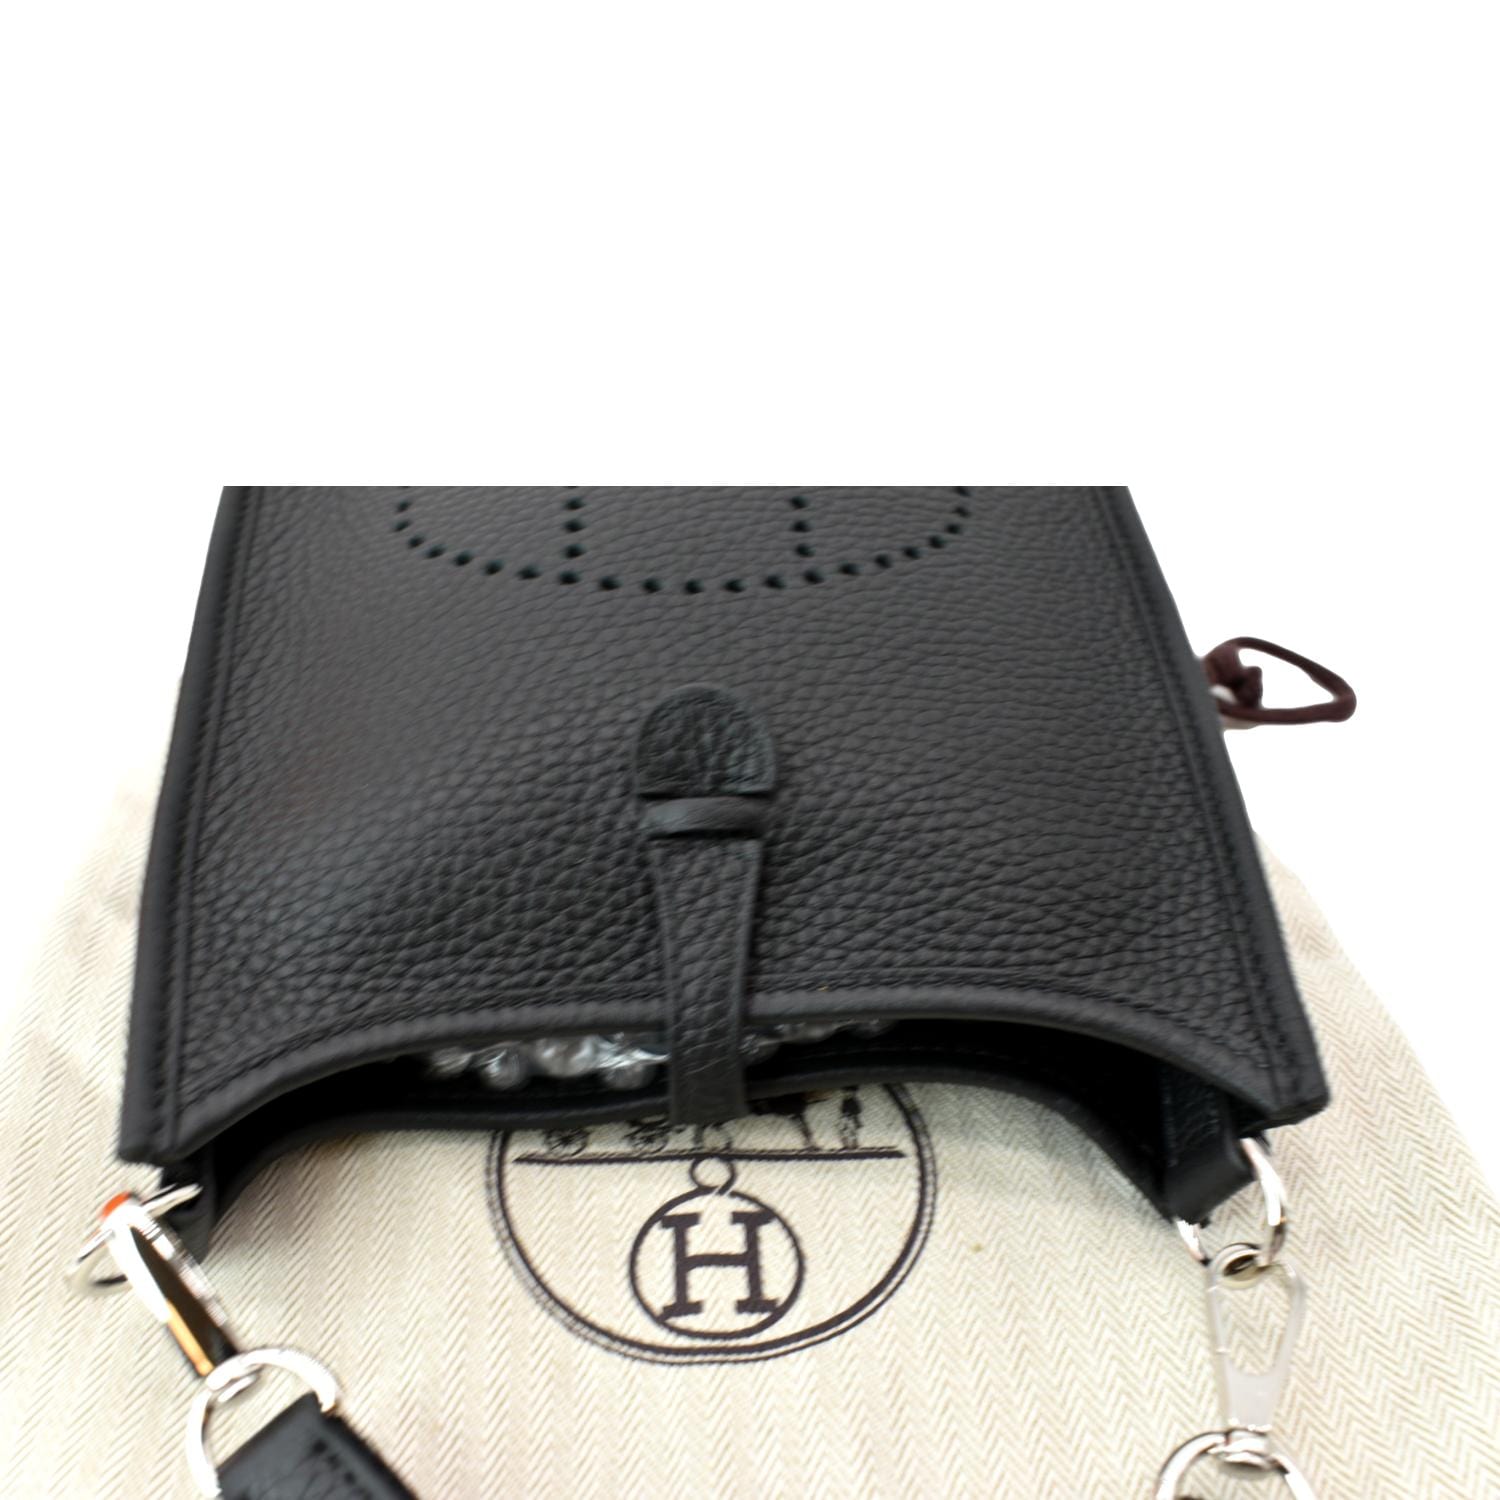 Hermes Evelyne 16 e TPM Crossbody Bag Encre Clemence Navy Blue Leather